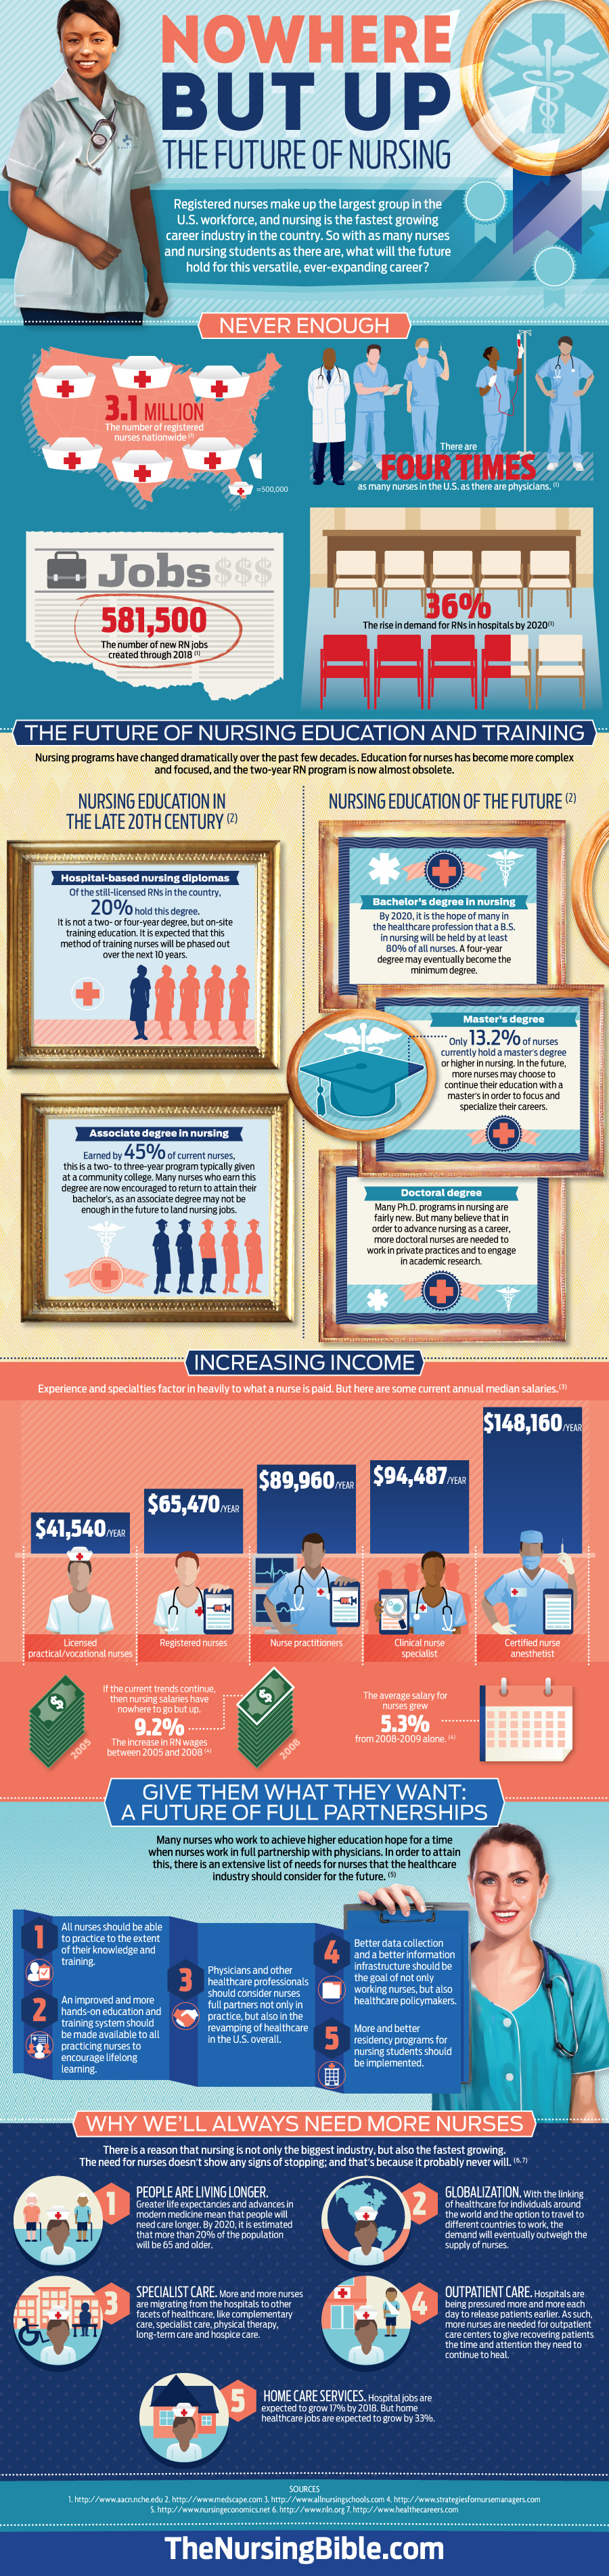 future of nursing infographic